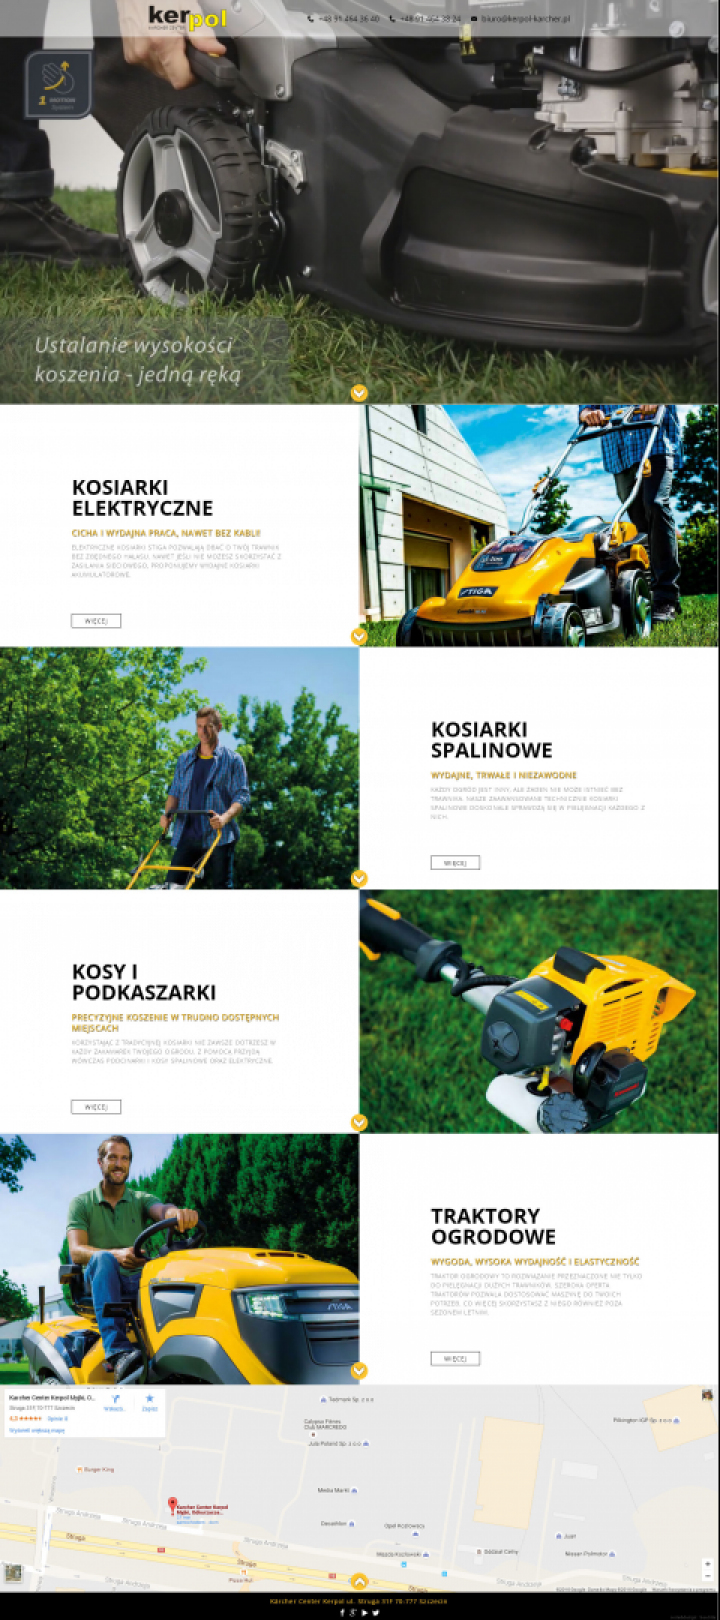 Serwis informacyjny dla firmy Kerpol ze Szczecina, traktujący o produktach Stiga